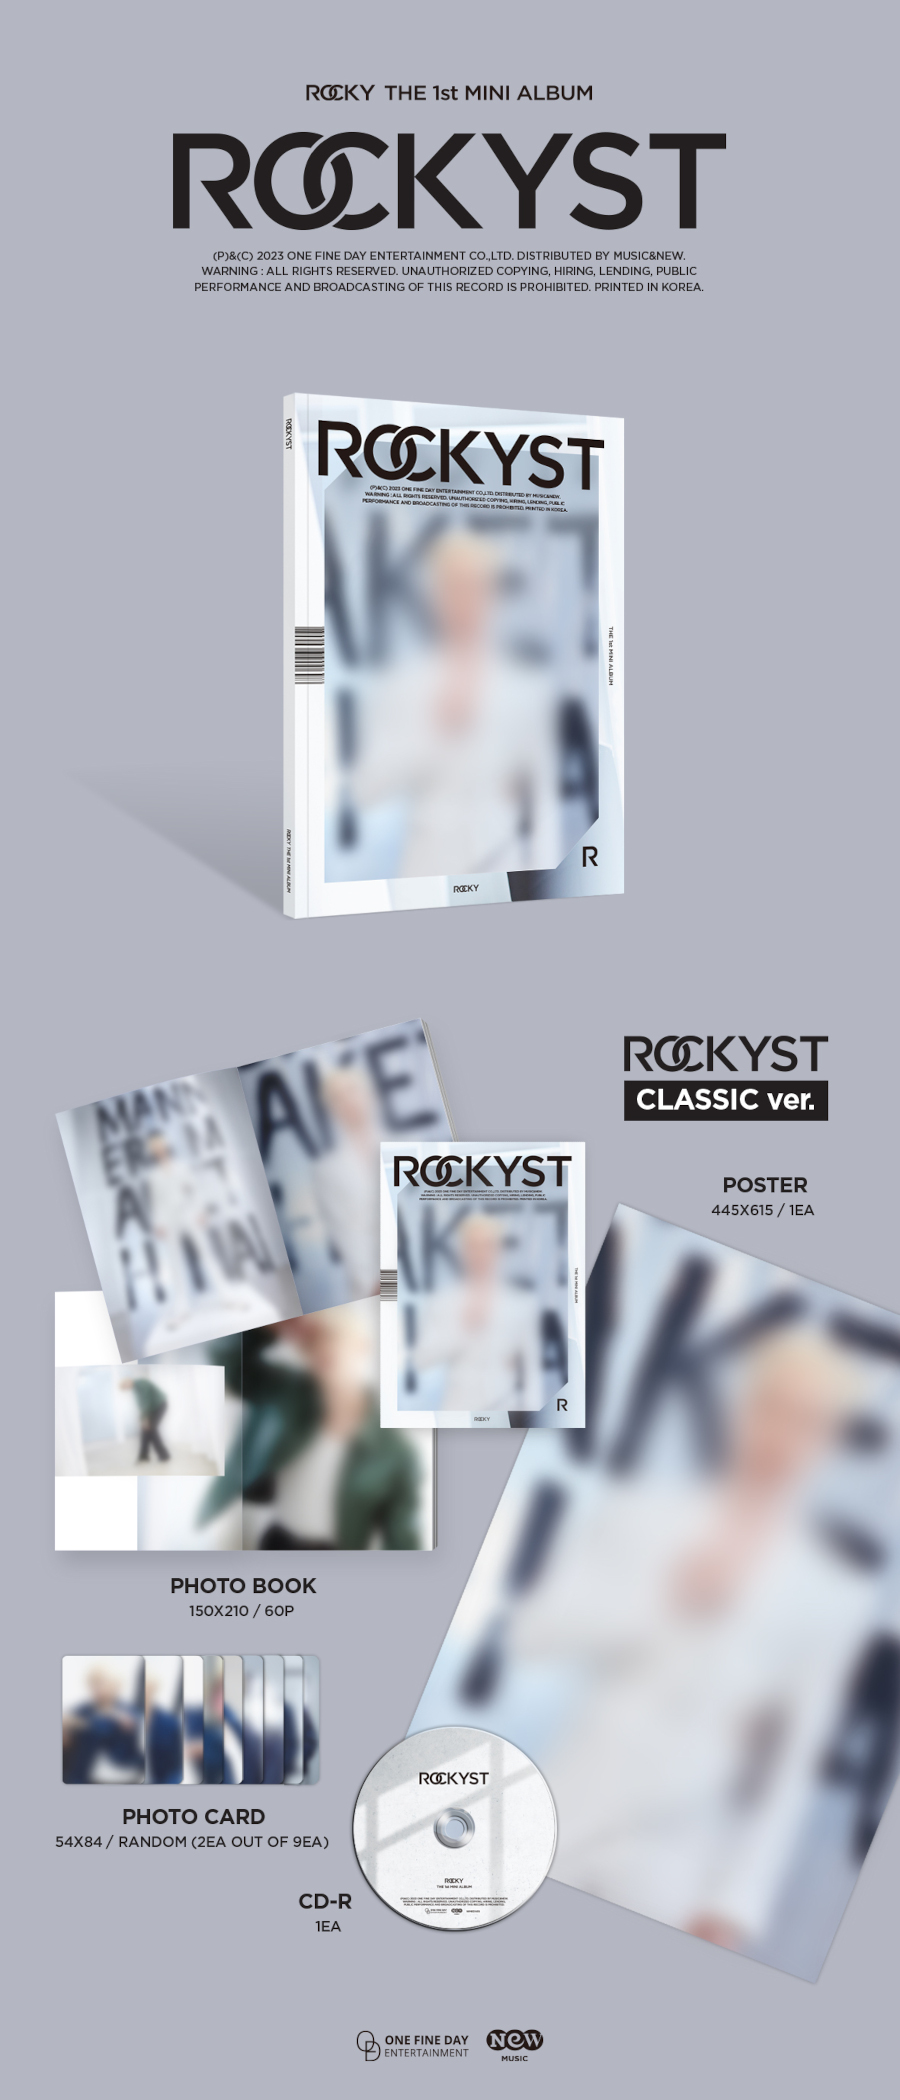 ROCKY(라키) - 미니앨범 1집 [ROCKYST] (Classic Ver.)